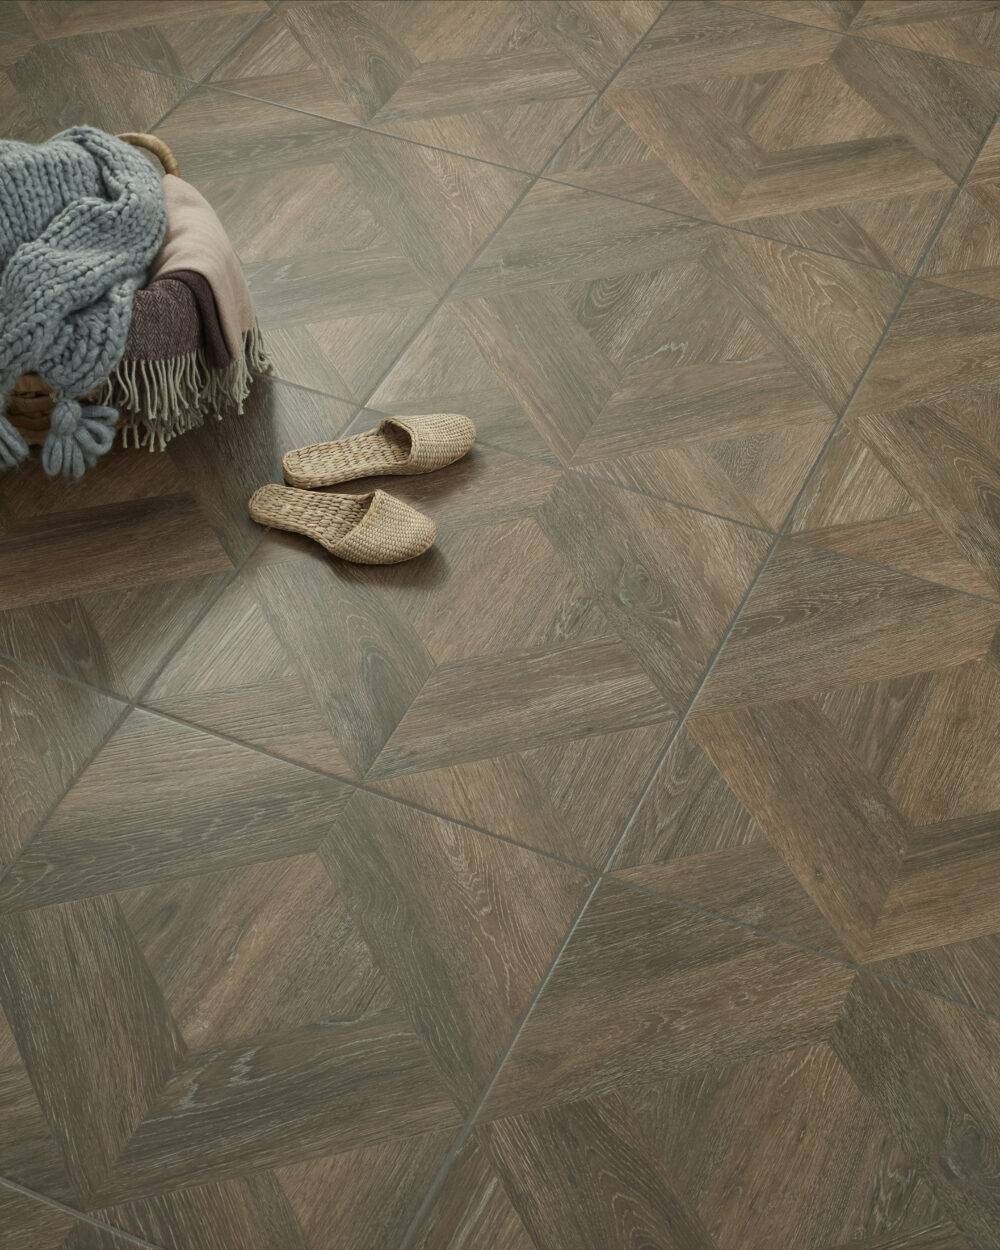 A wood-look diamond patterned floor tile.